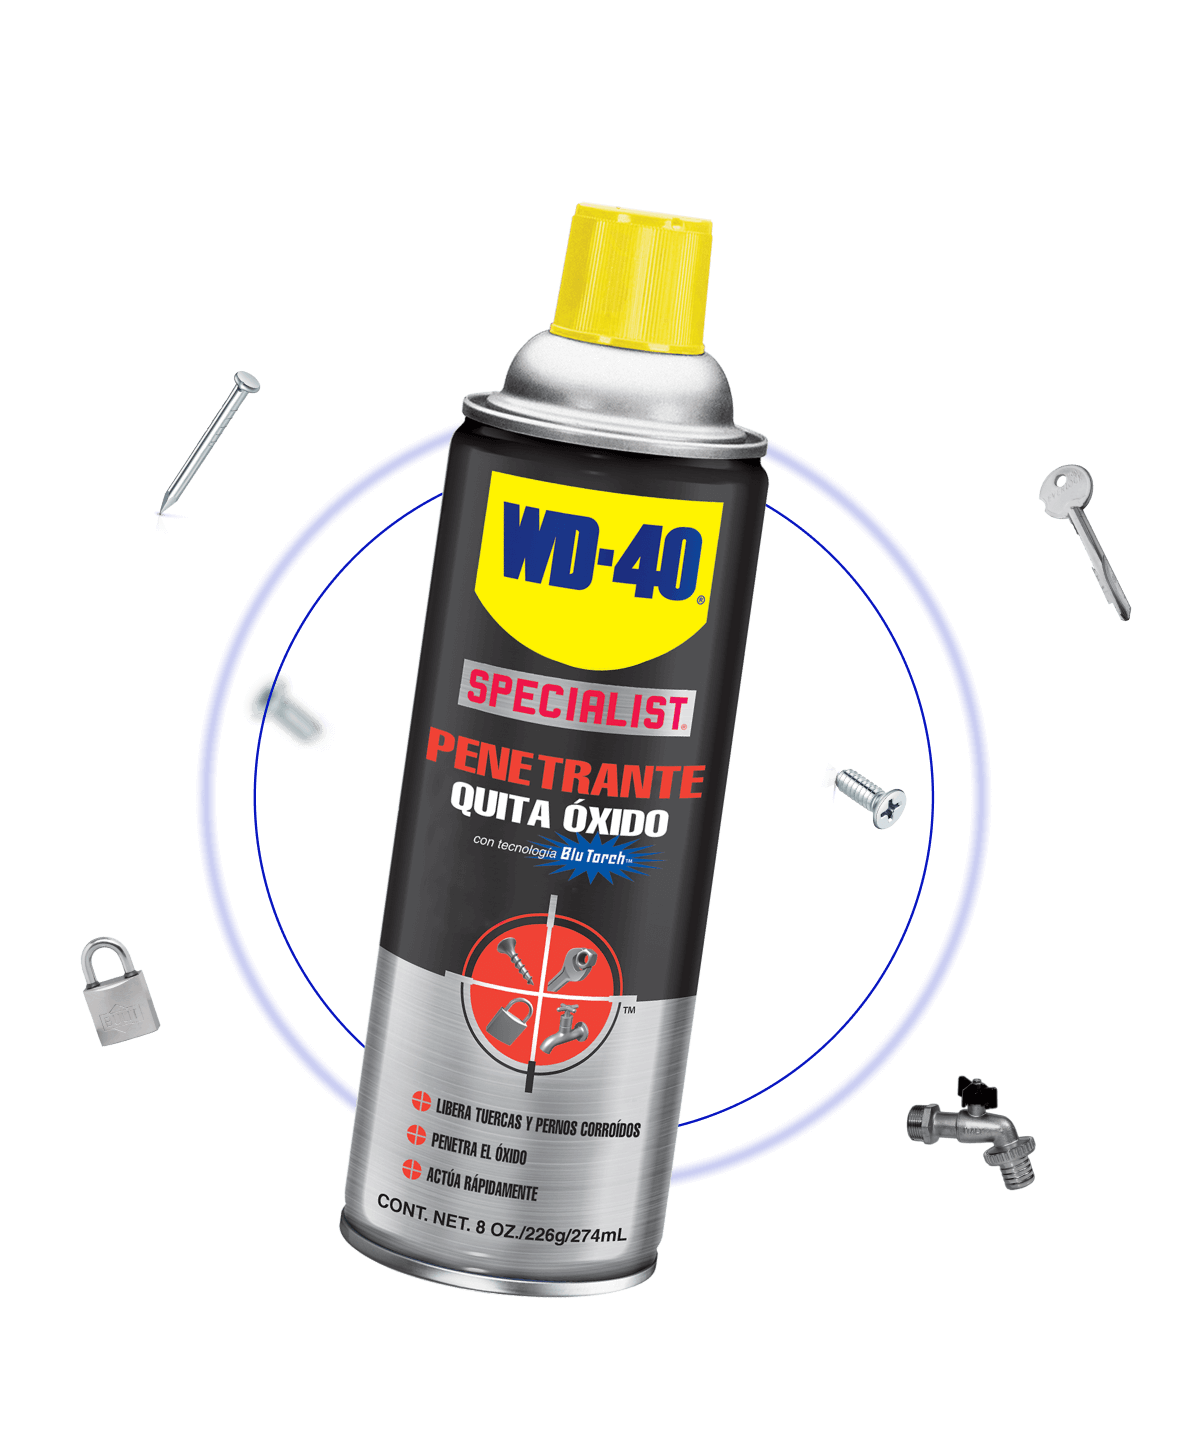 WD-40 Specialist® – Penetrante Quita Óxido